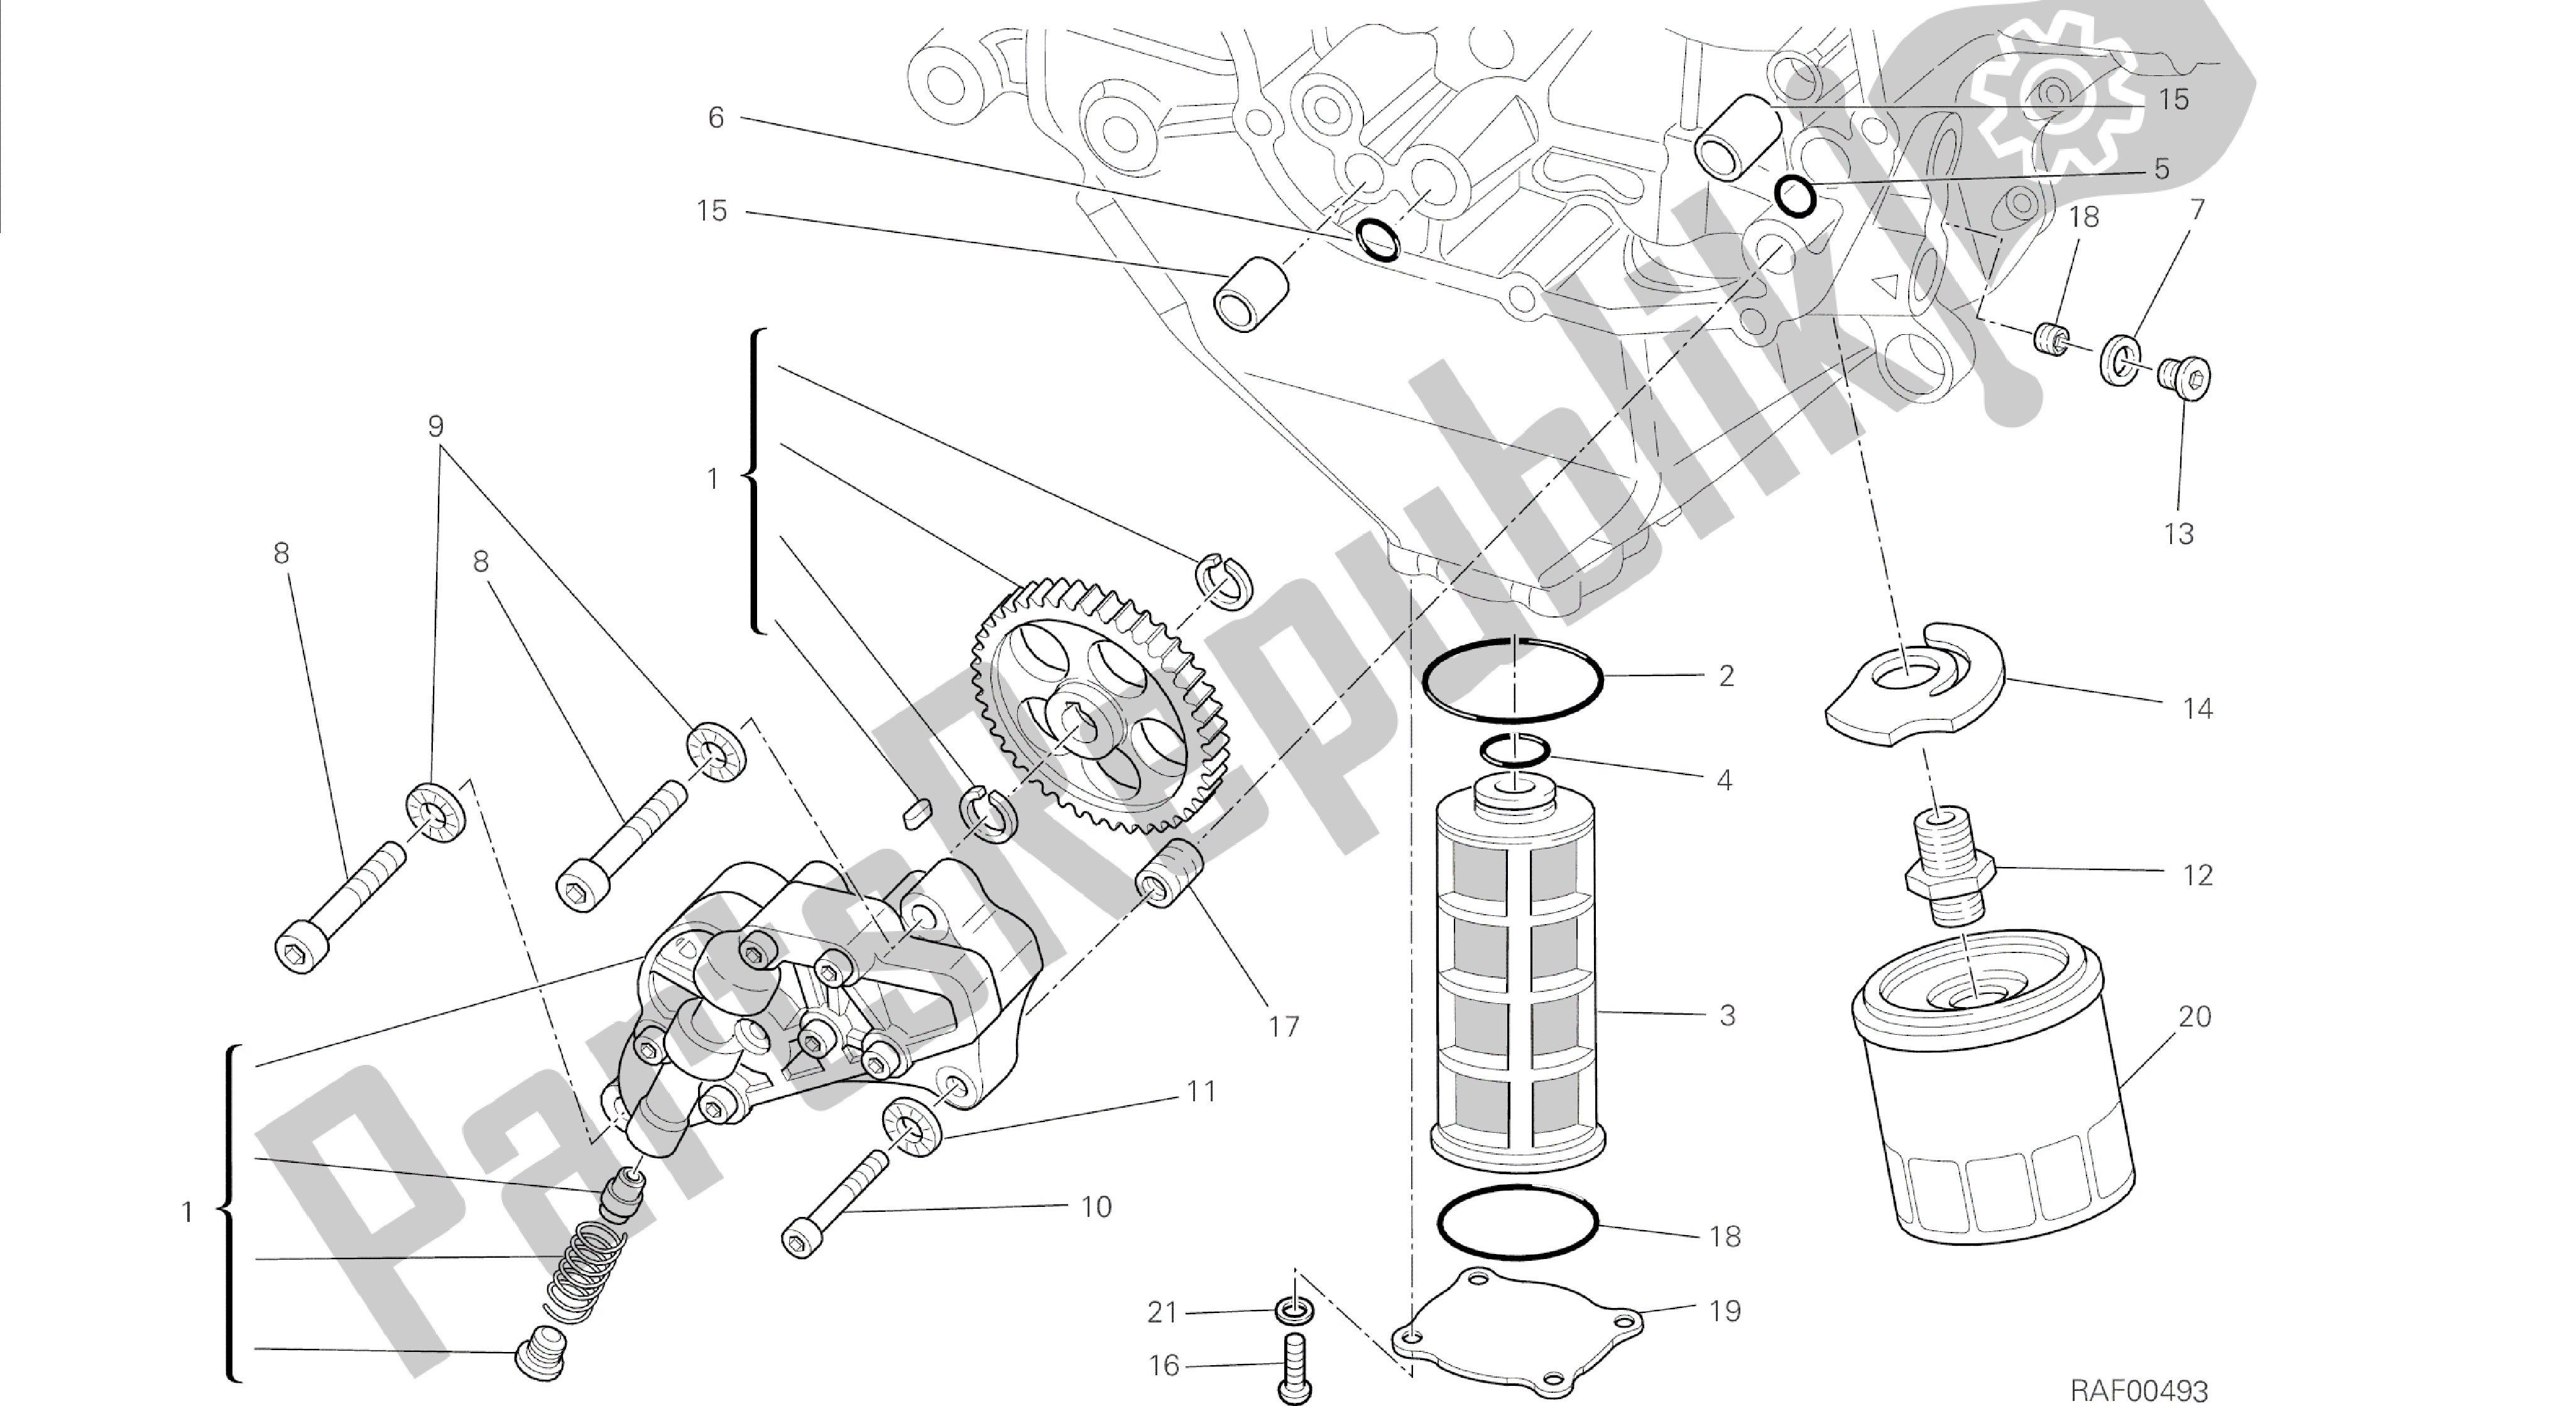 Todas las partes para Dibujo 009 - Motor De Grupo De Filtros Y Bomba De Aceite [mod: Dvl] de Ducati Diavel 1200 2014